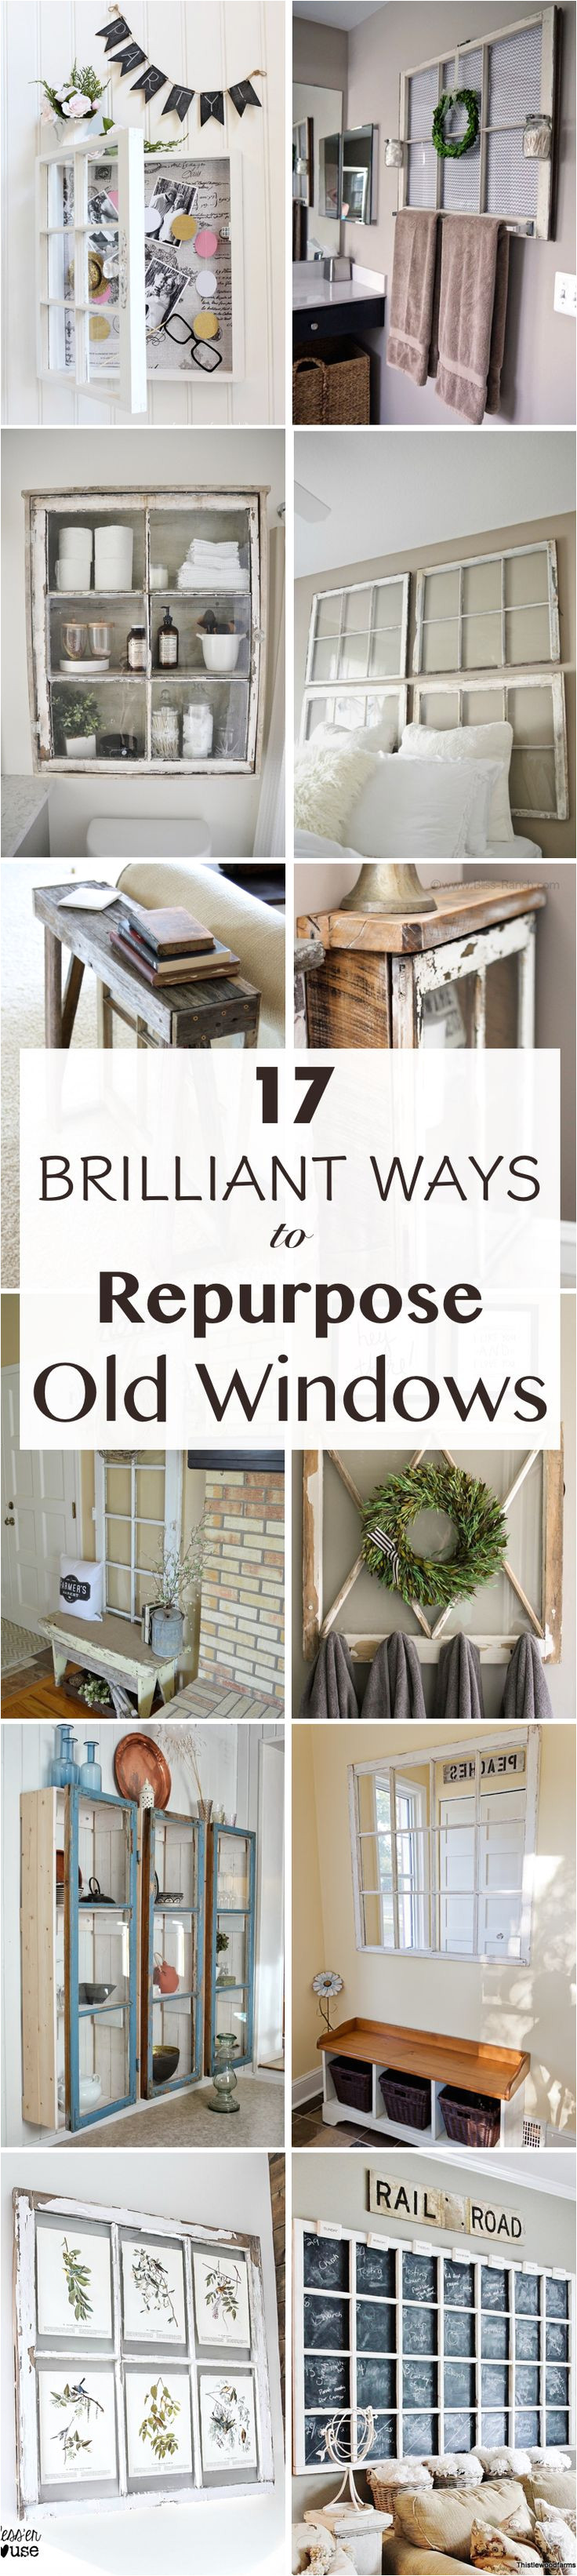 17 brilliant ways to repurpose old windows